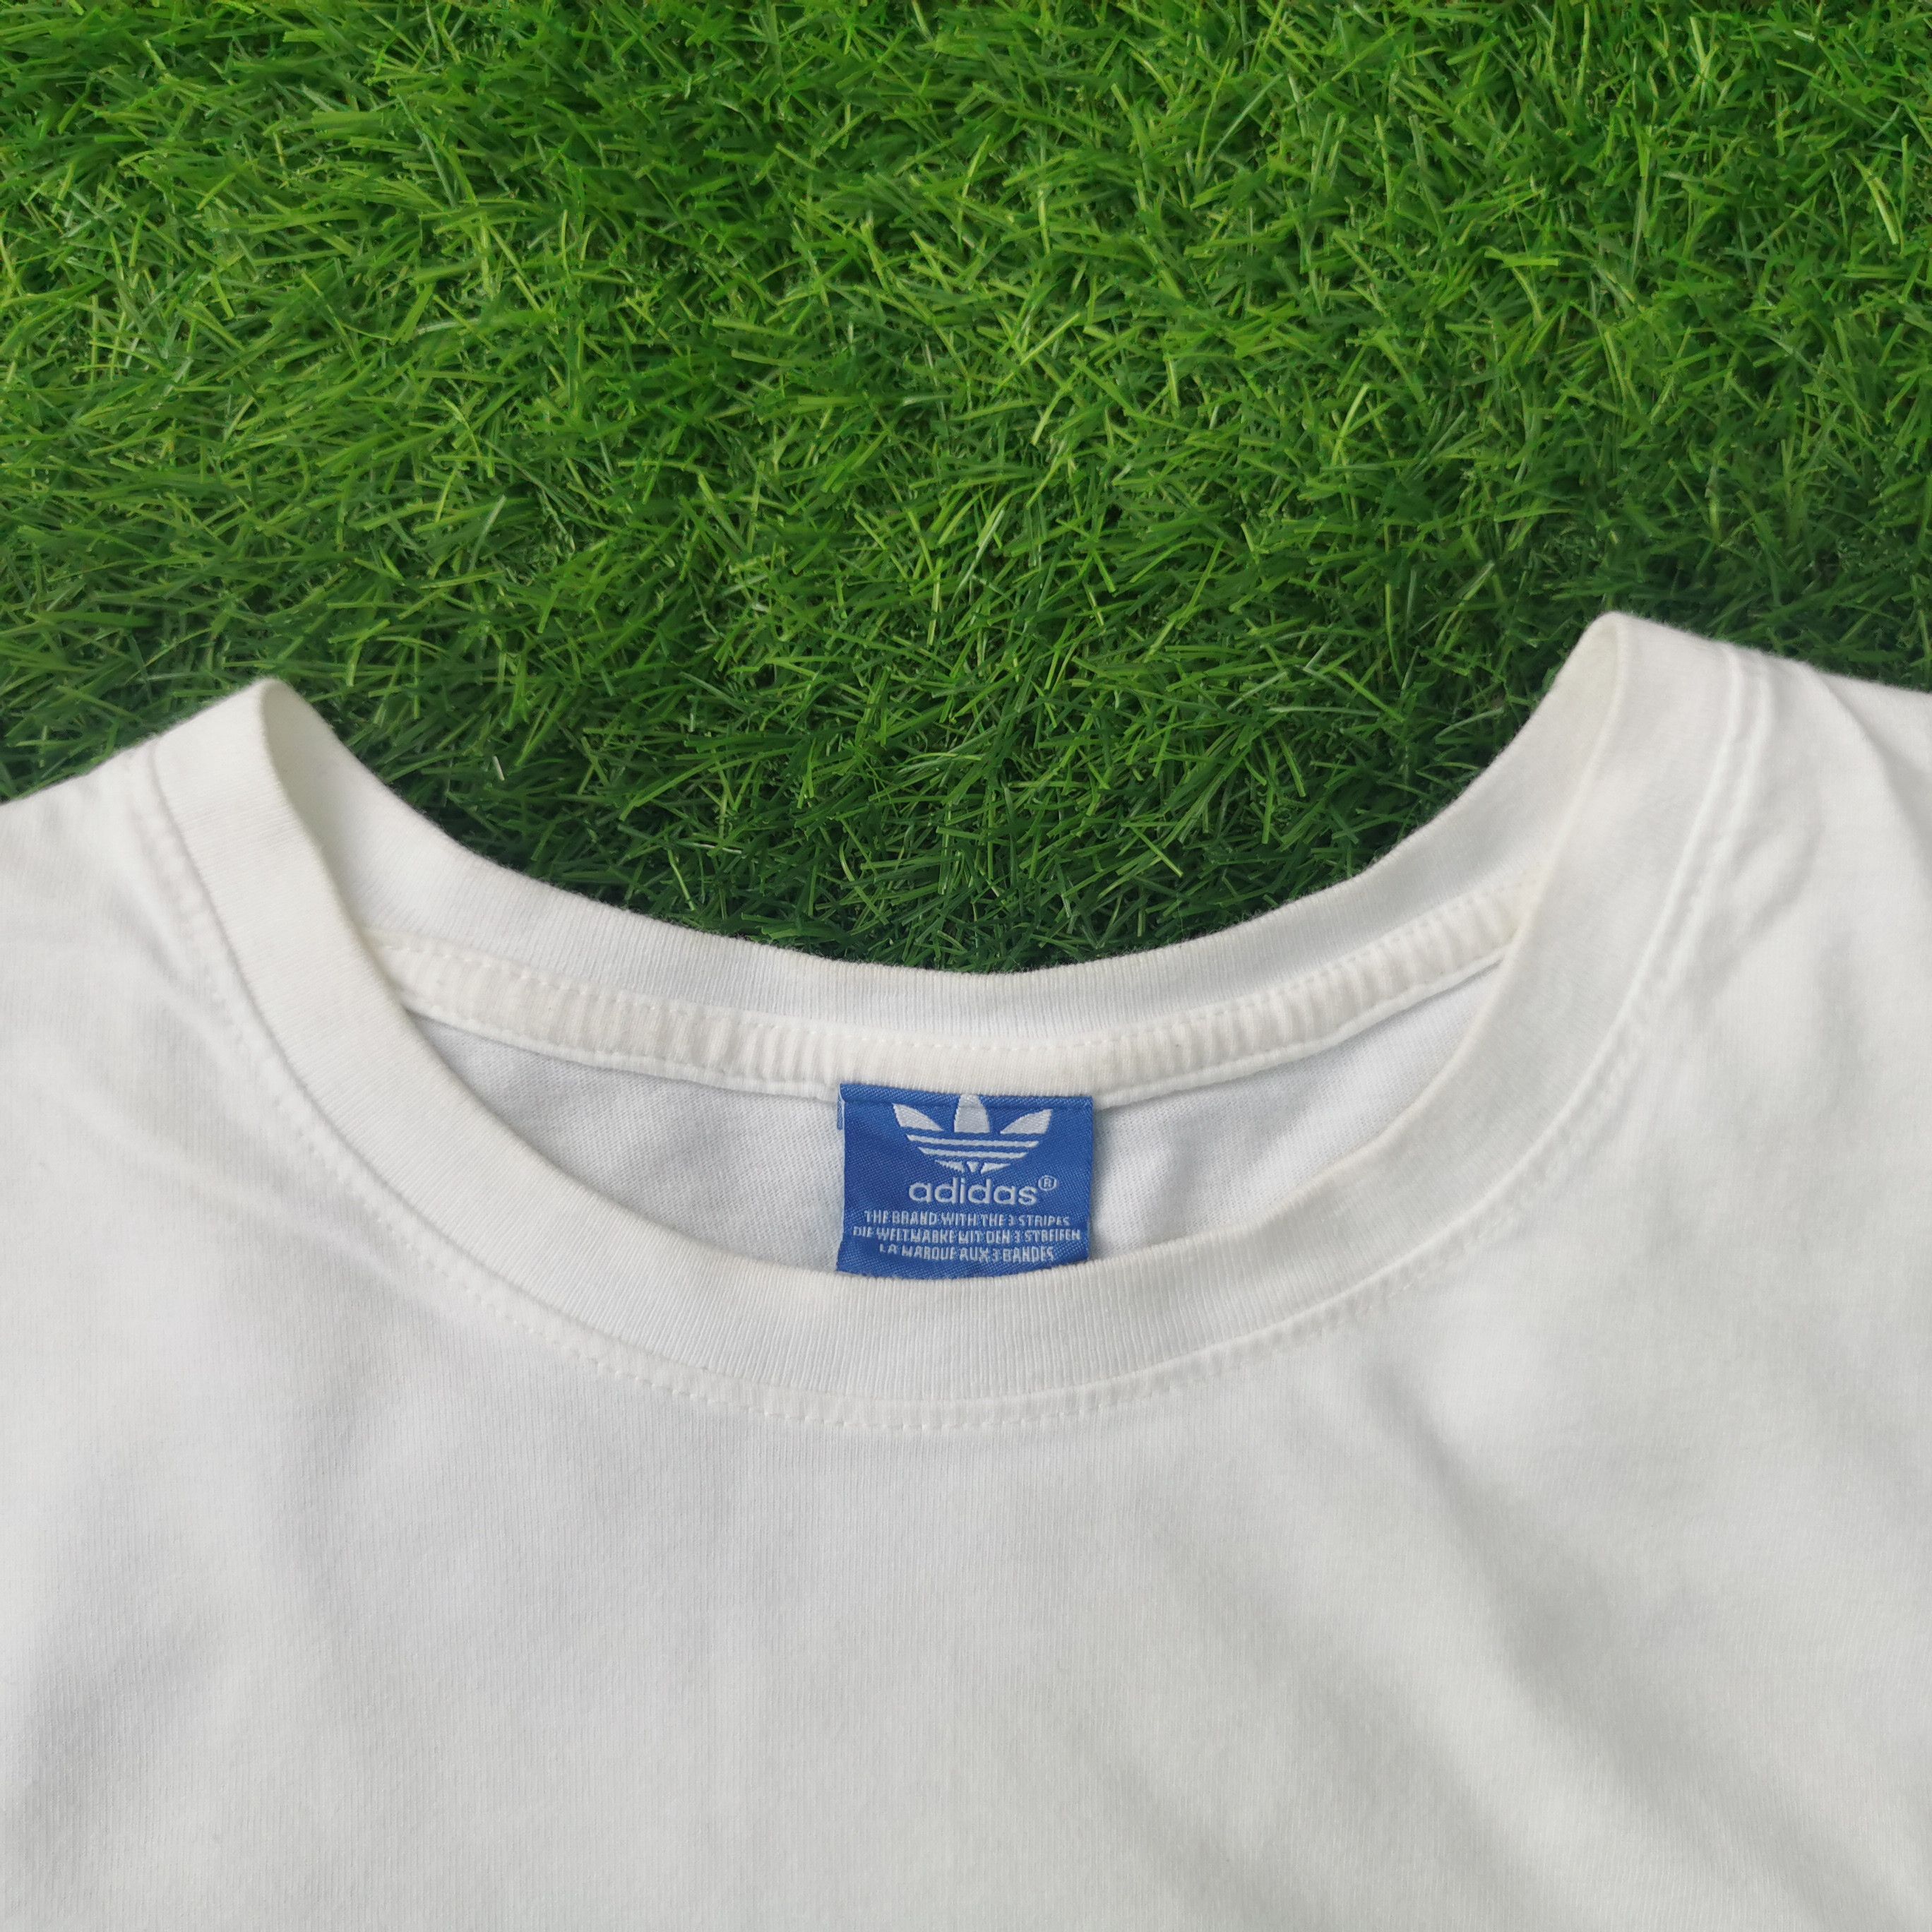 Vintage Adidas Big Print Classic Logo Tshirt - 4